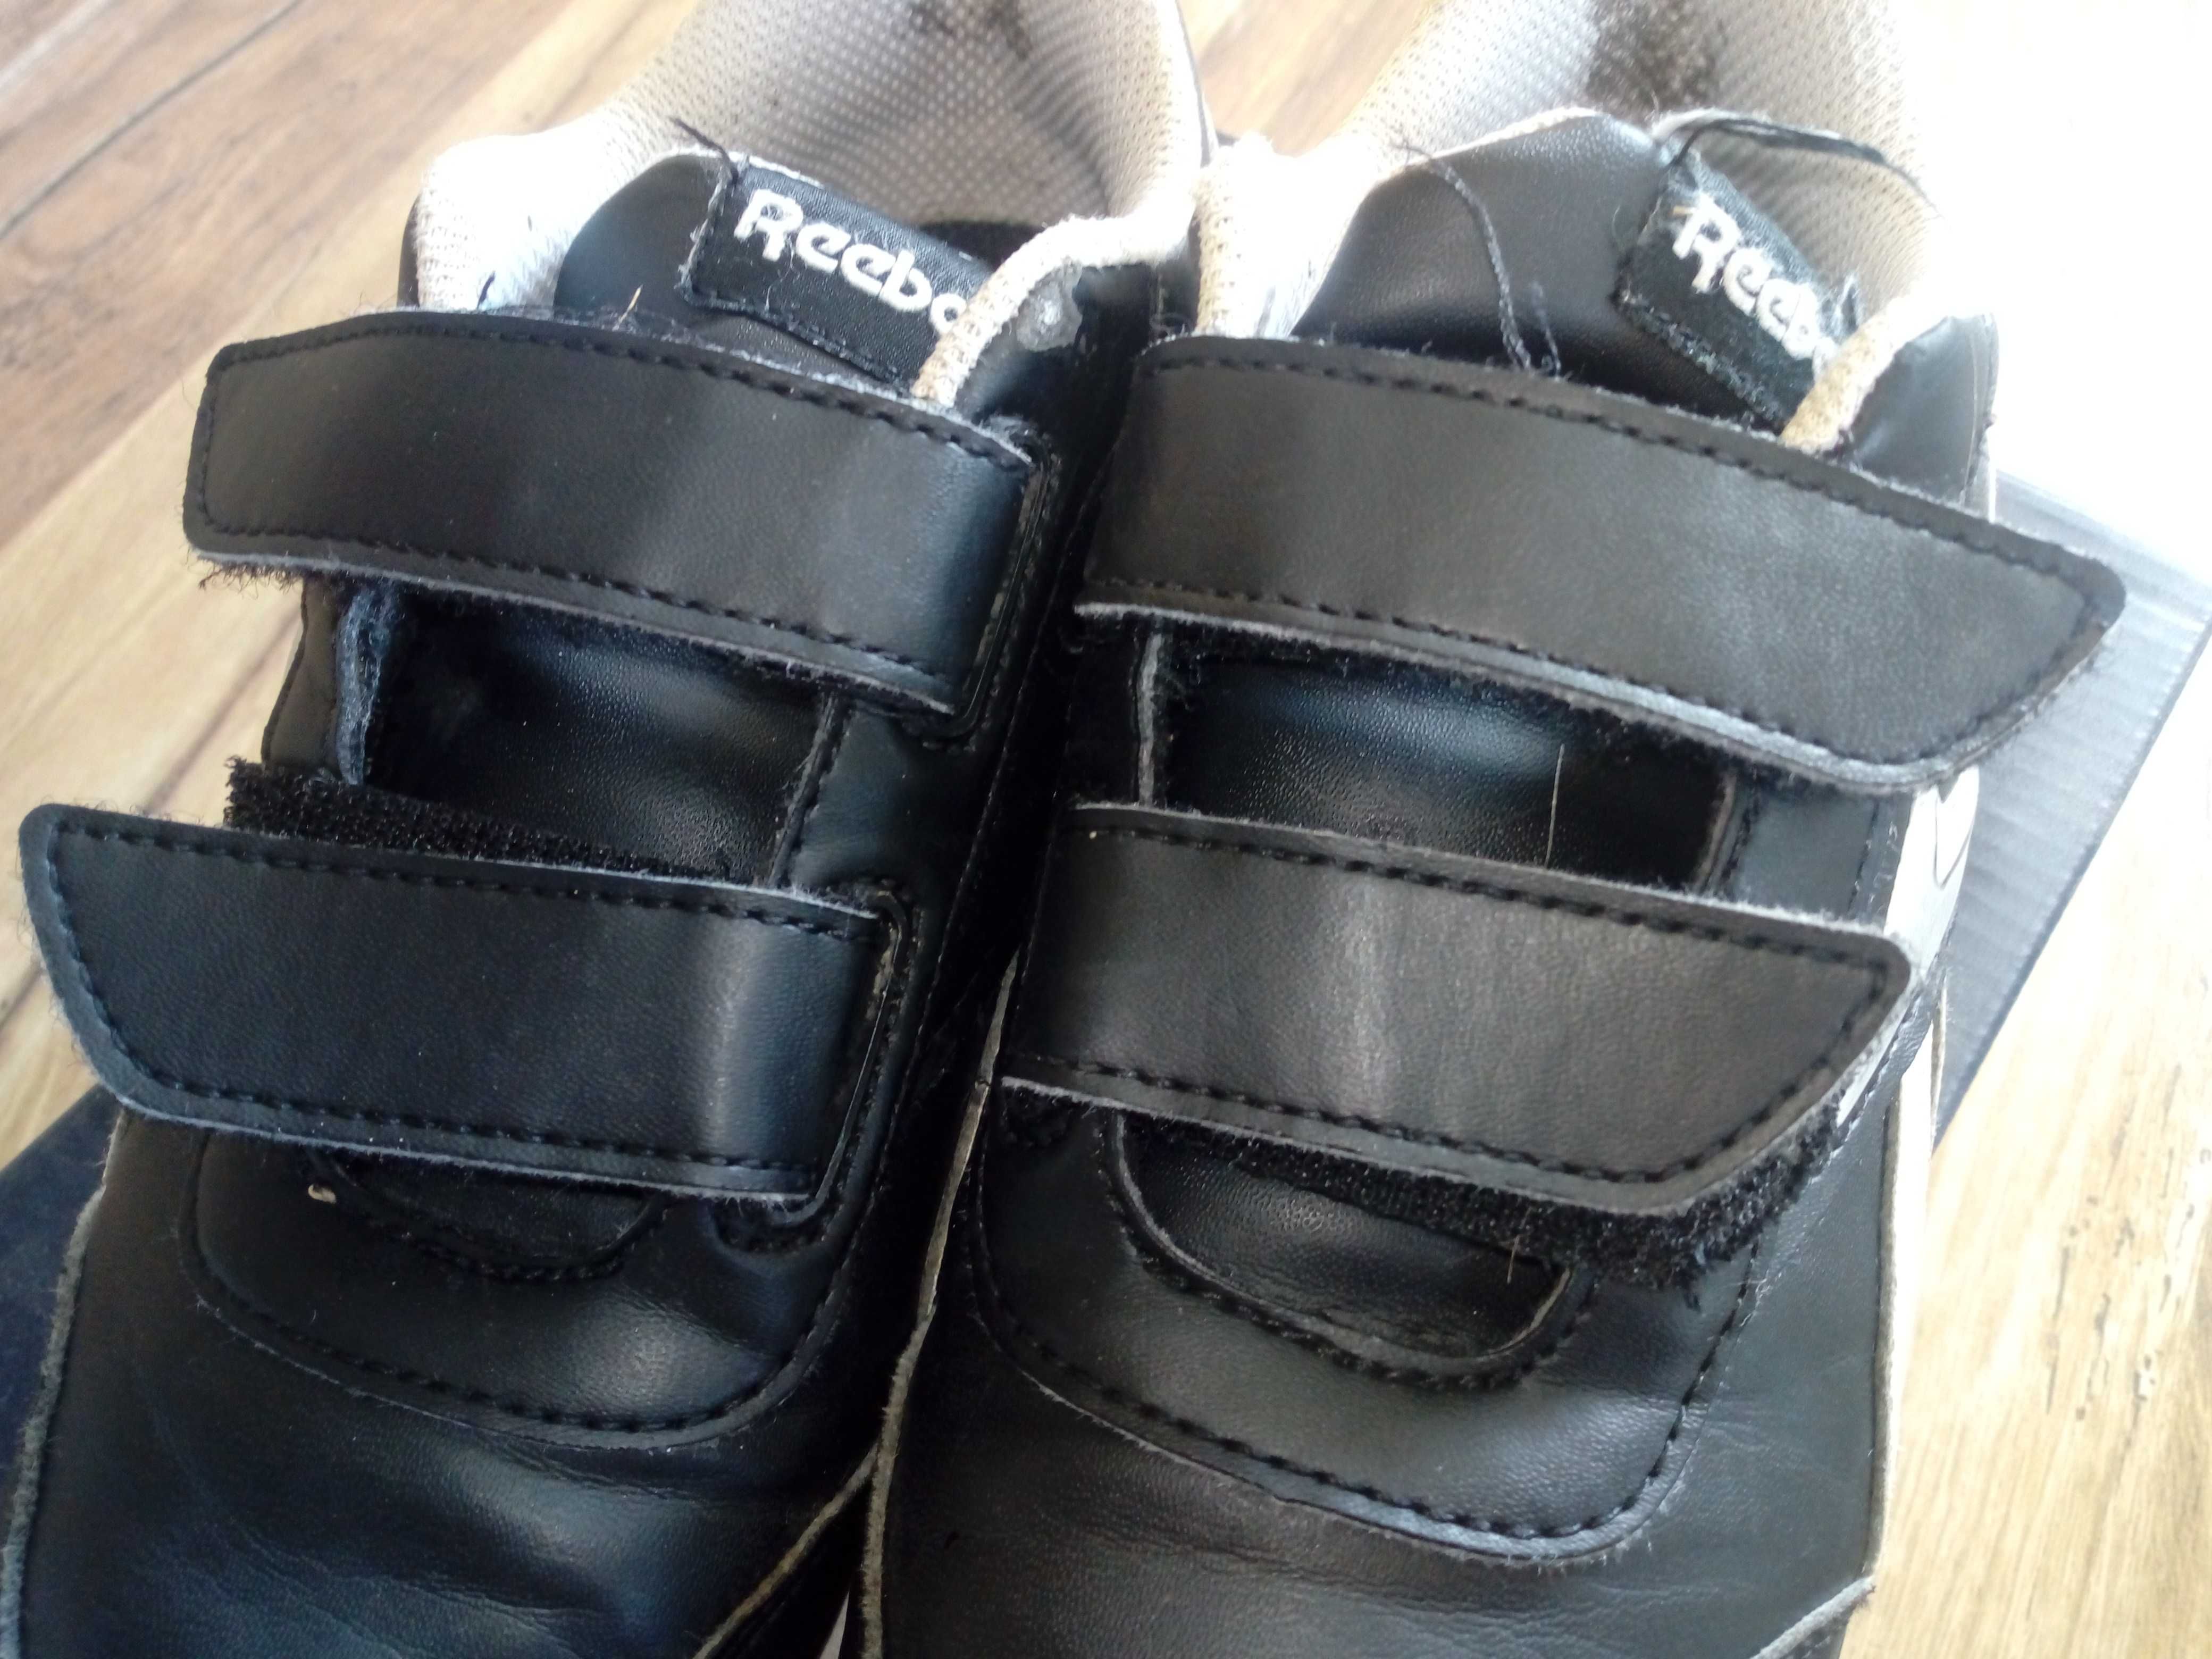 Buty adidasy sneakersy chłopięce Reebok Royal Classic r. 31, 19,5cm